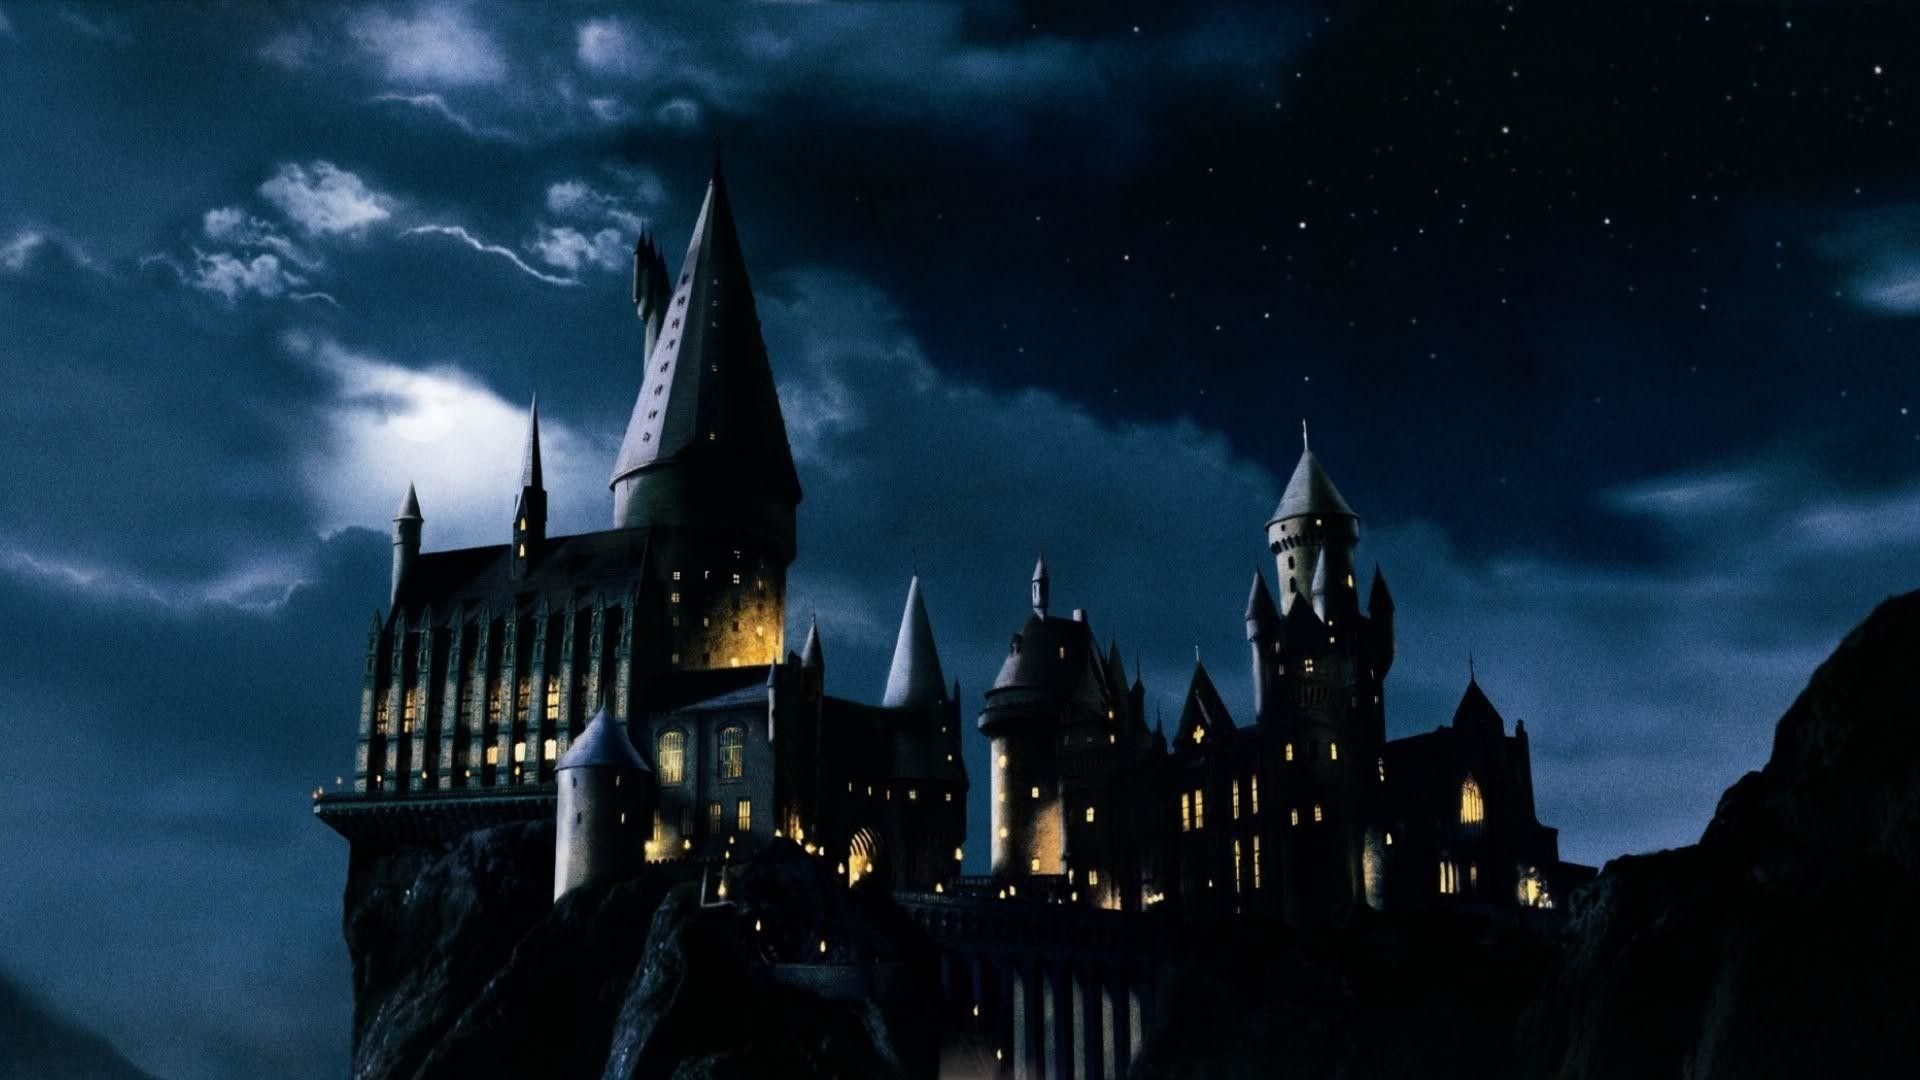 Tìm kiếm hình nền desktop Harry Potter để trang trí cho máy tính của bạn. Bộ truyện tranh hấp dẫn và nổi tiếng này không chỉ là một câu chuyện giải trí, mà là một tác phẩm nghệ thuật, được thiết kế với những tuyệt phẩm đẹp mắt gây ấn tượng mạnh.